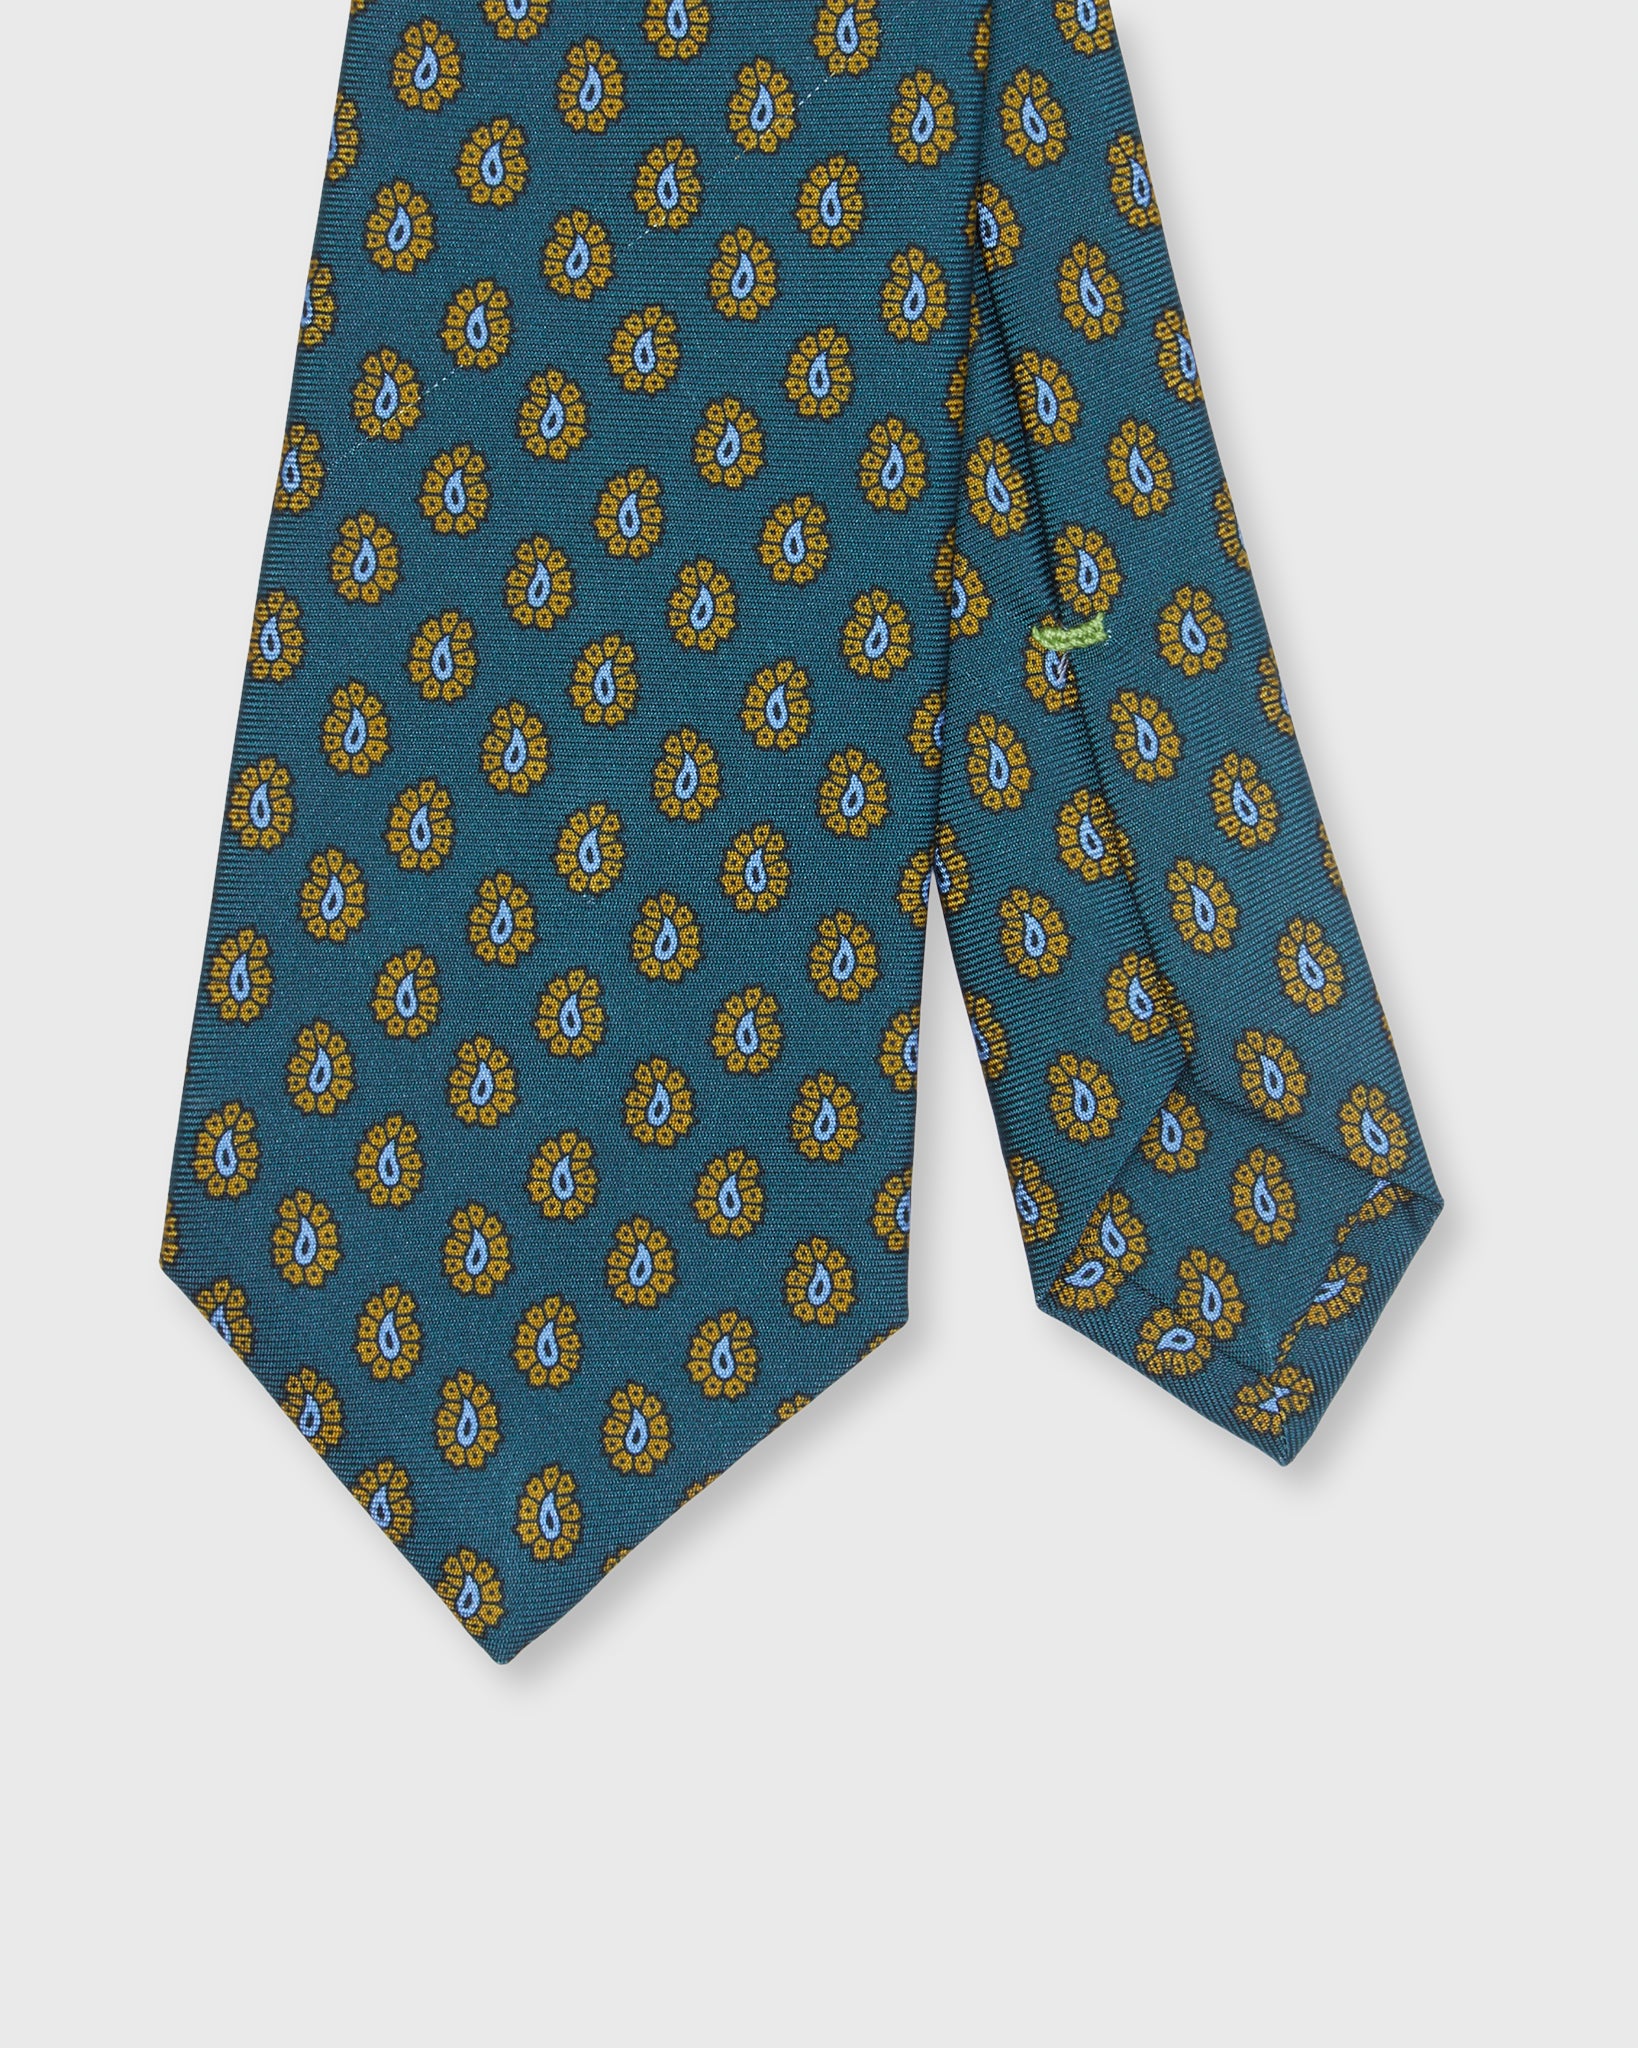 Silk Print Tie in Lovat/Mustard/Light Blue Paisley